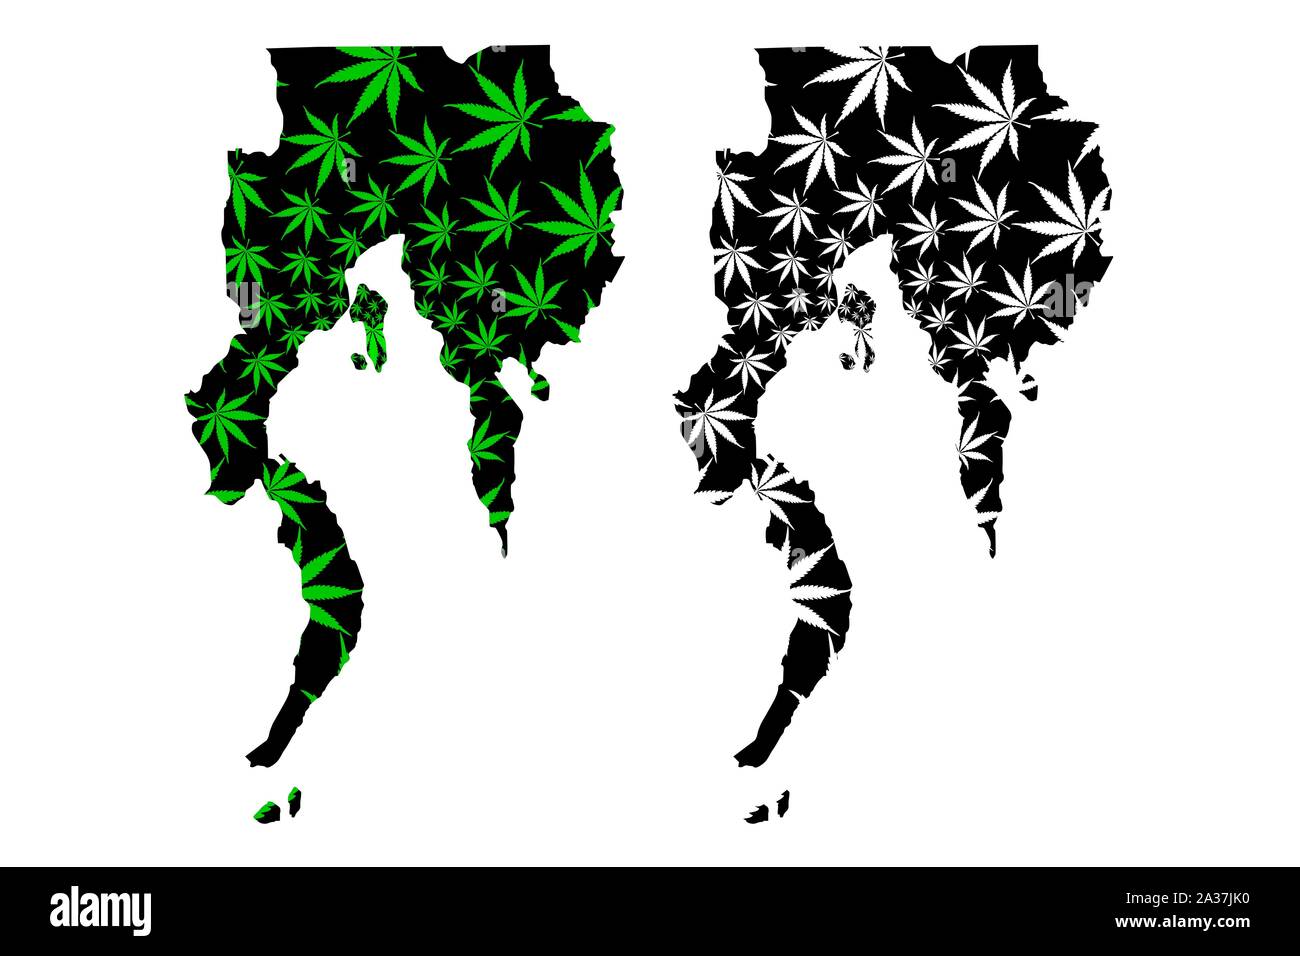 Davao regione (regioni e province delle Filippine) mappa è progettato Cannabis leaf verde e nero, a sud di Mindanao (Regione XI) mappa fatta di marij Illustrazione Vettoriale